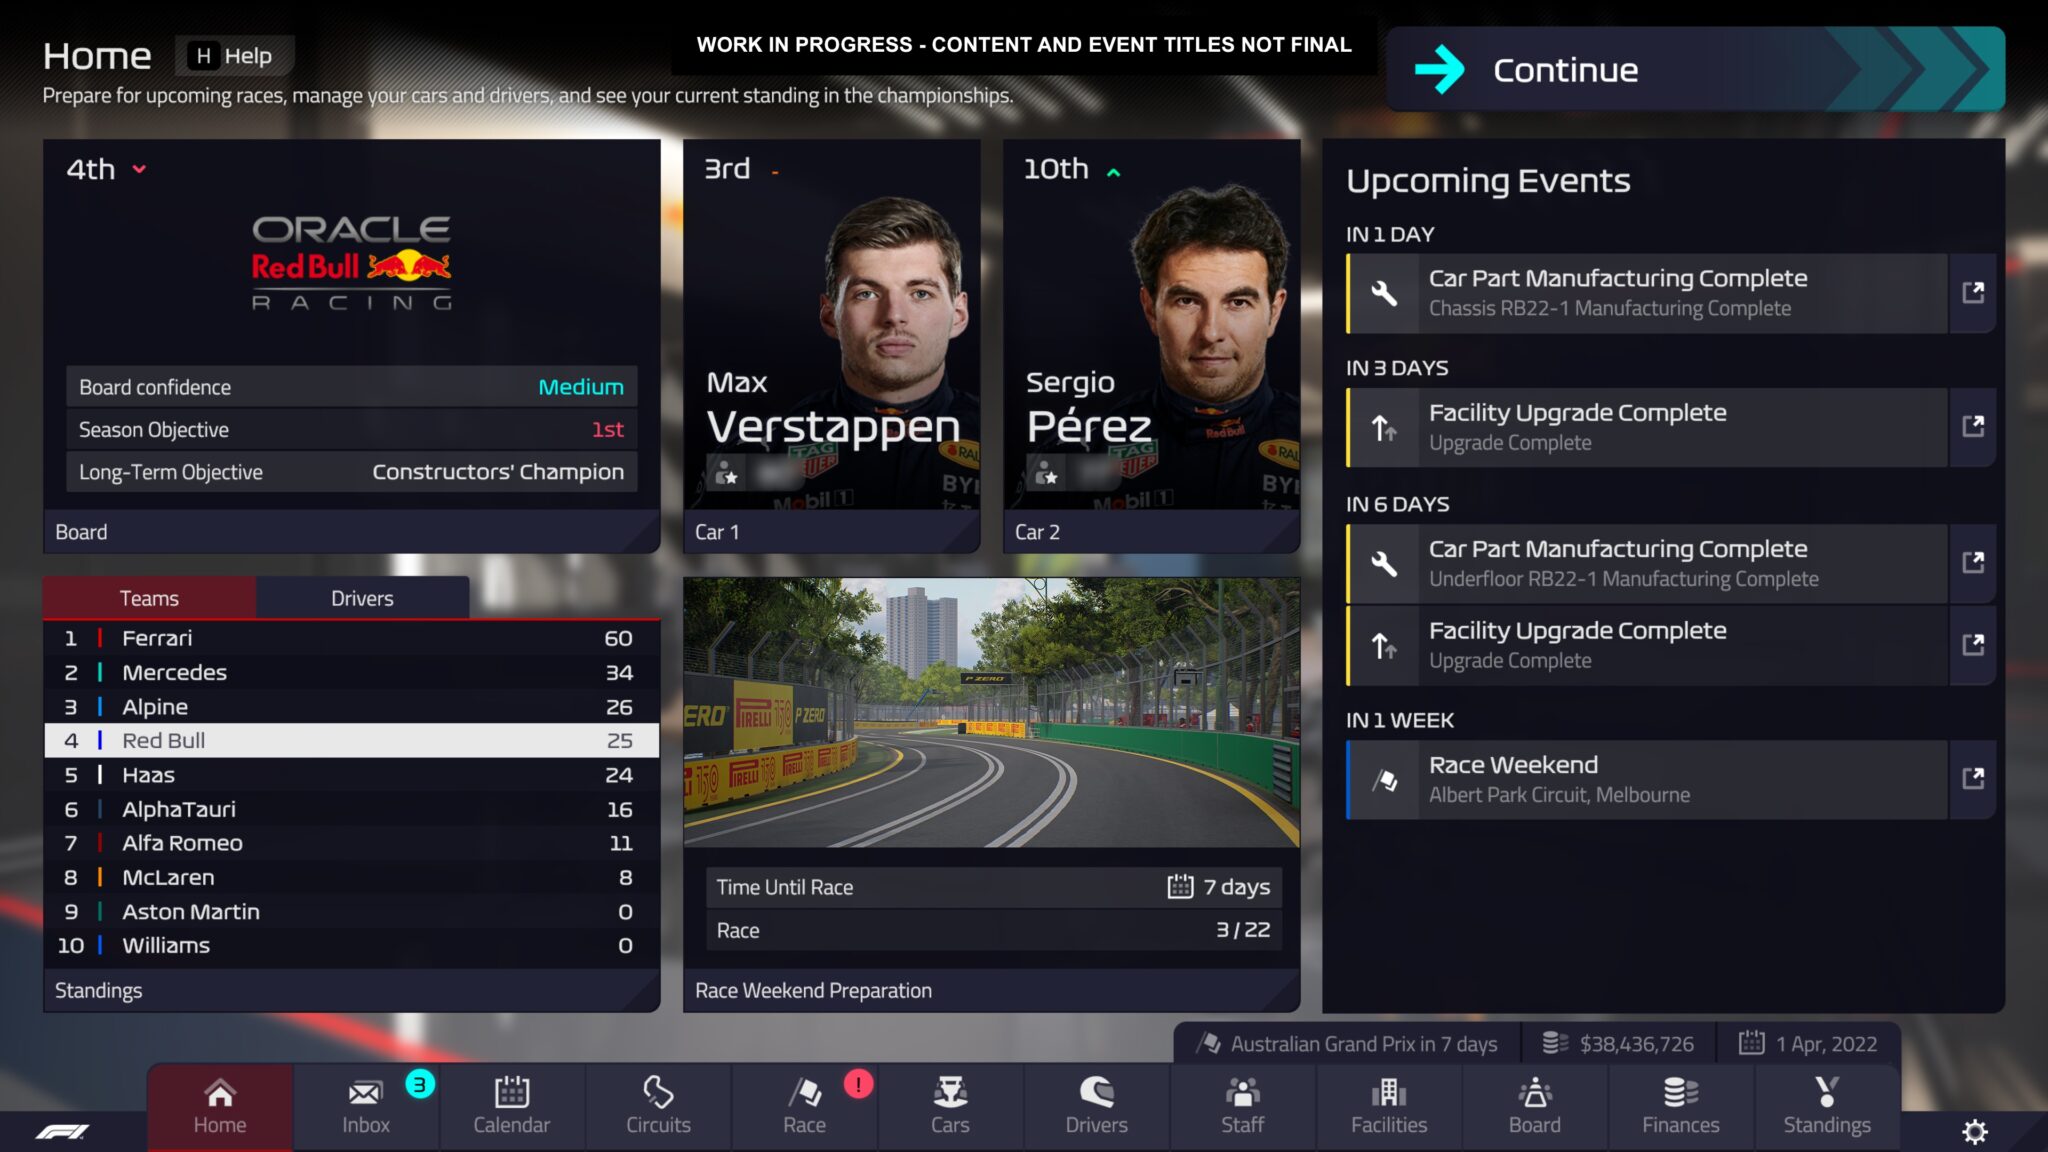 F1 Manager 2022 ofrece una interfaz bien estructurada con un aspecto auténtico de Fórmula 1.